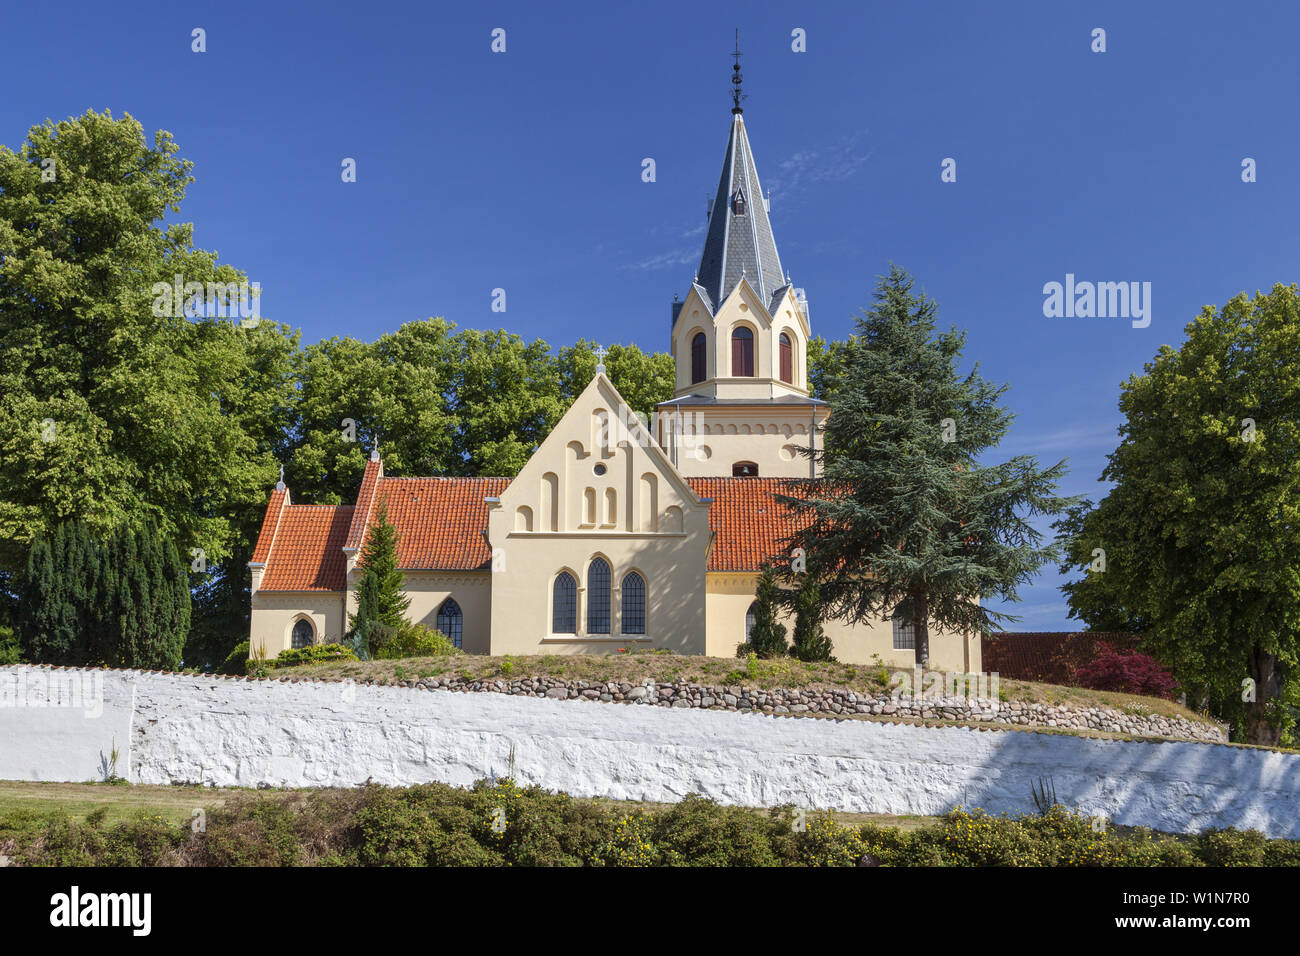 Chiesa del Castello Tranekaer, Isola di Langeland, danese del Mare del sud le isole, sud della Danimarca, la Danimarca, la Scandinavia, il Nord Europa Foto Stock